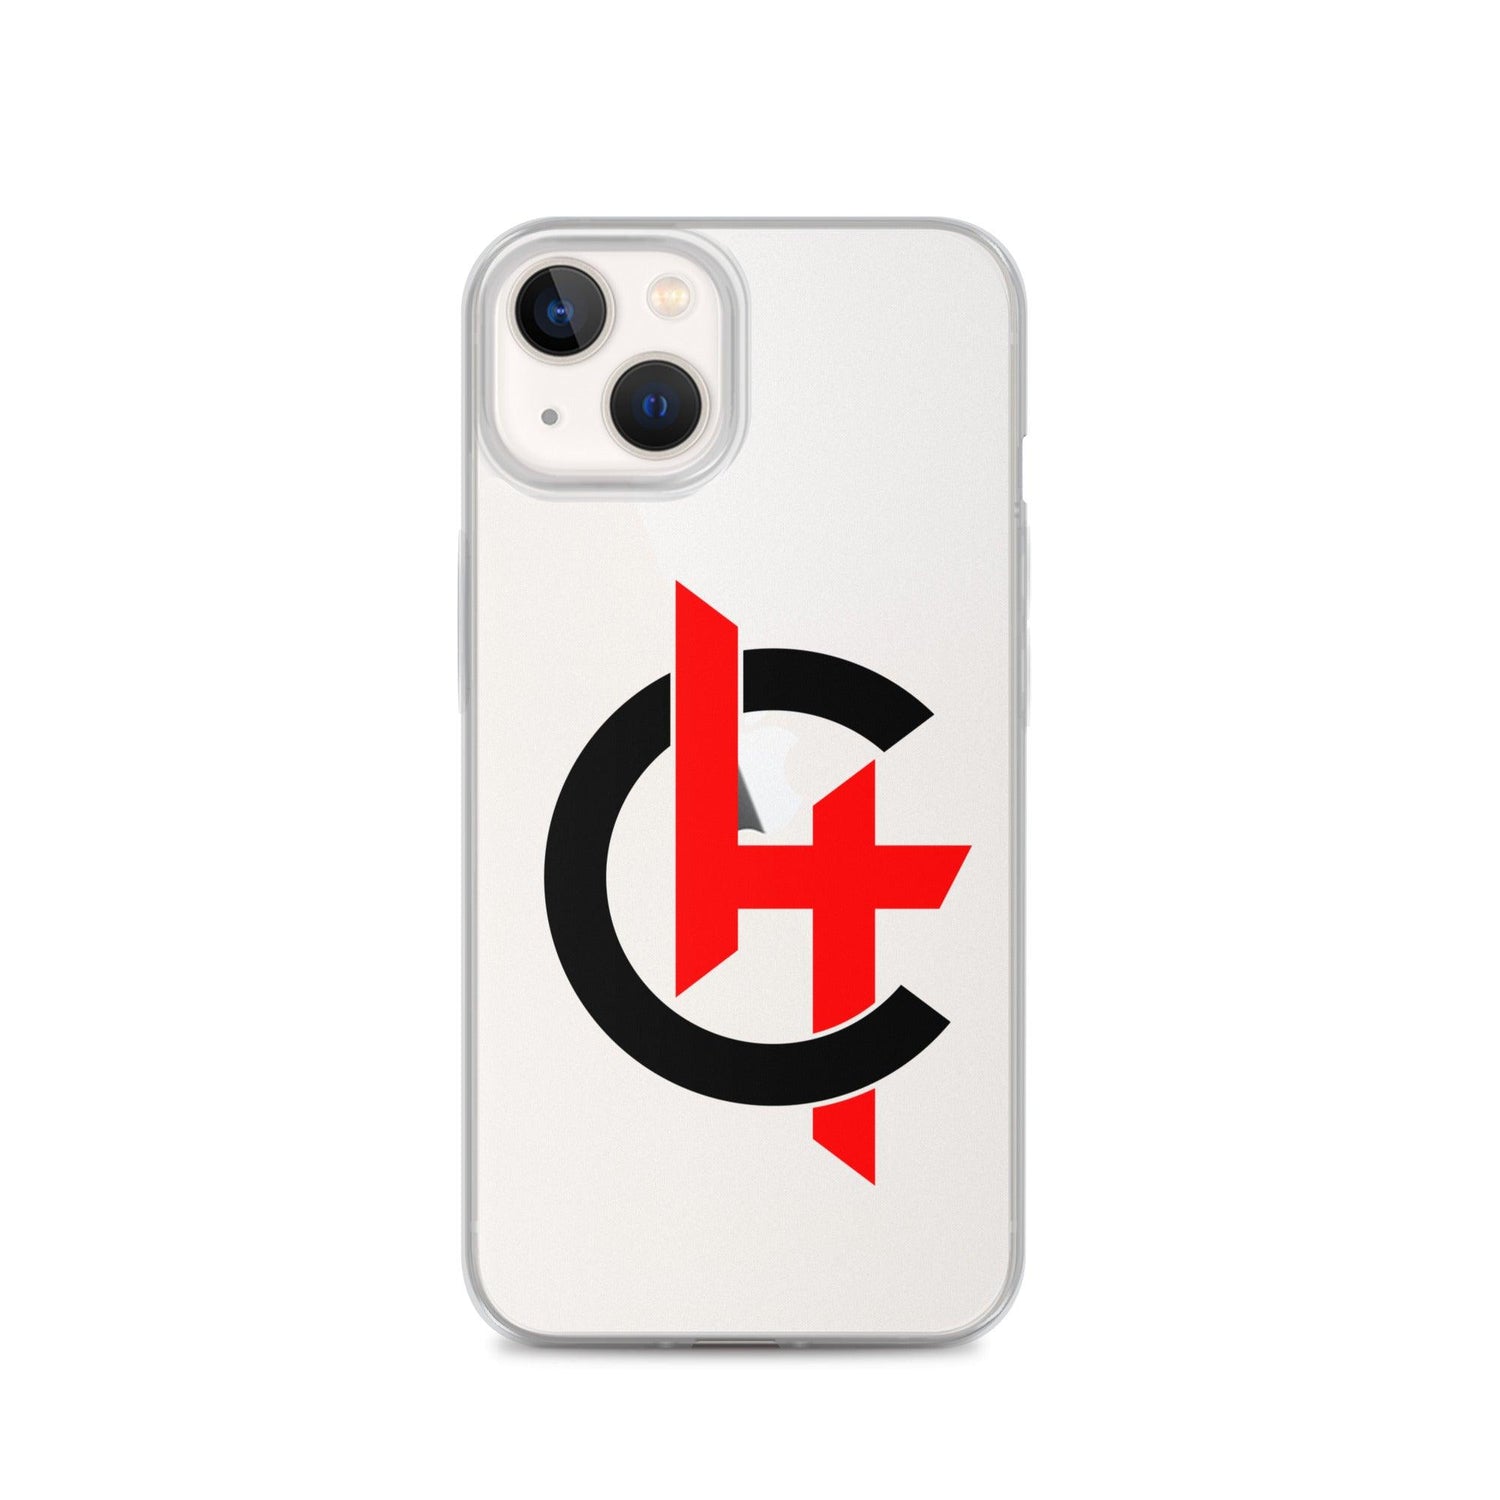 Halil Chabi “HC” iPhone Case - Fan Arch